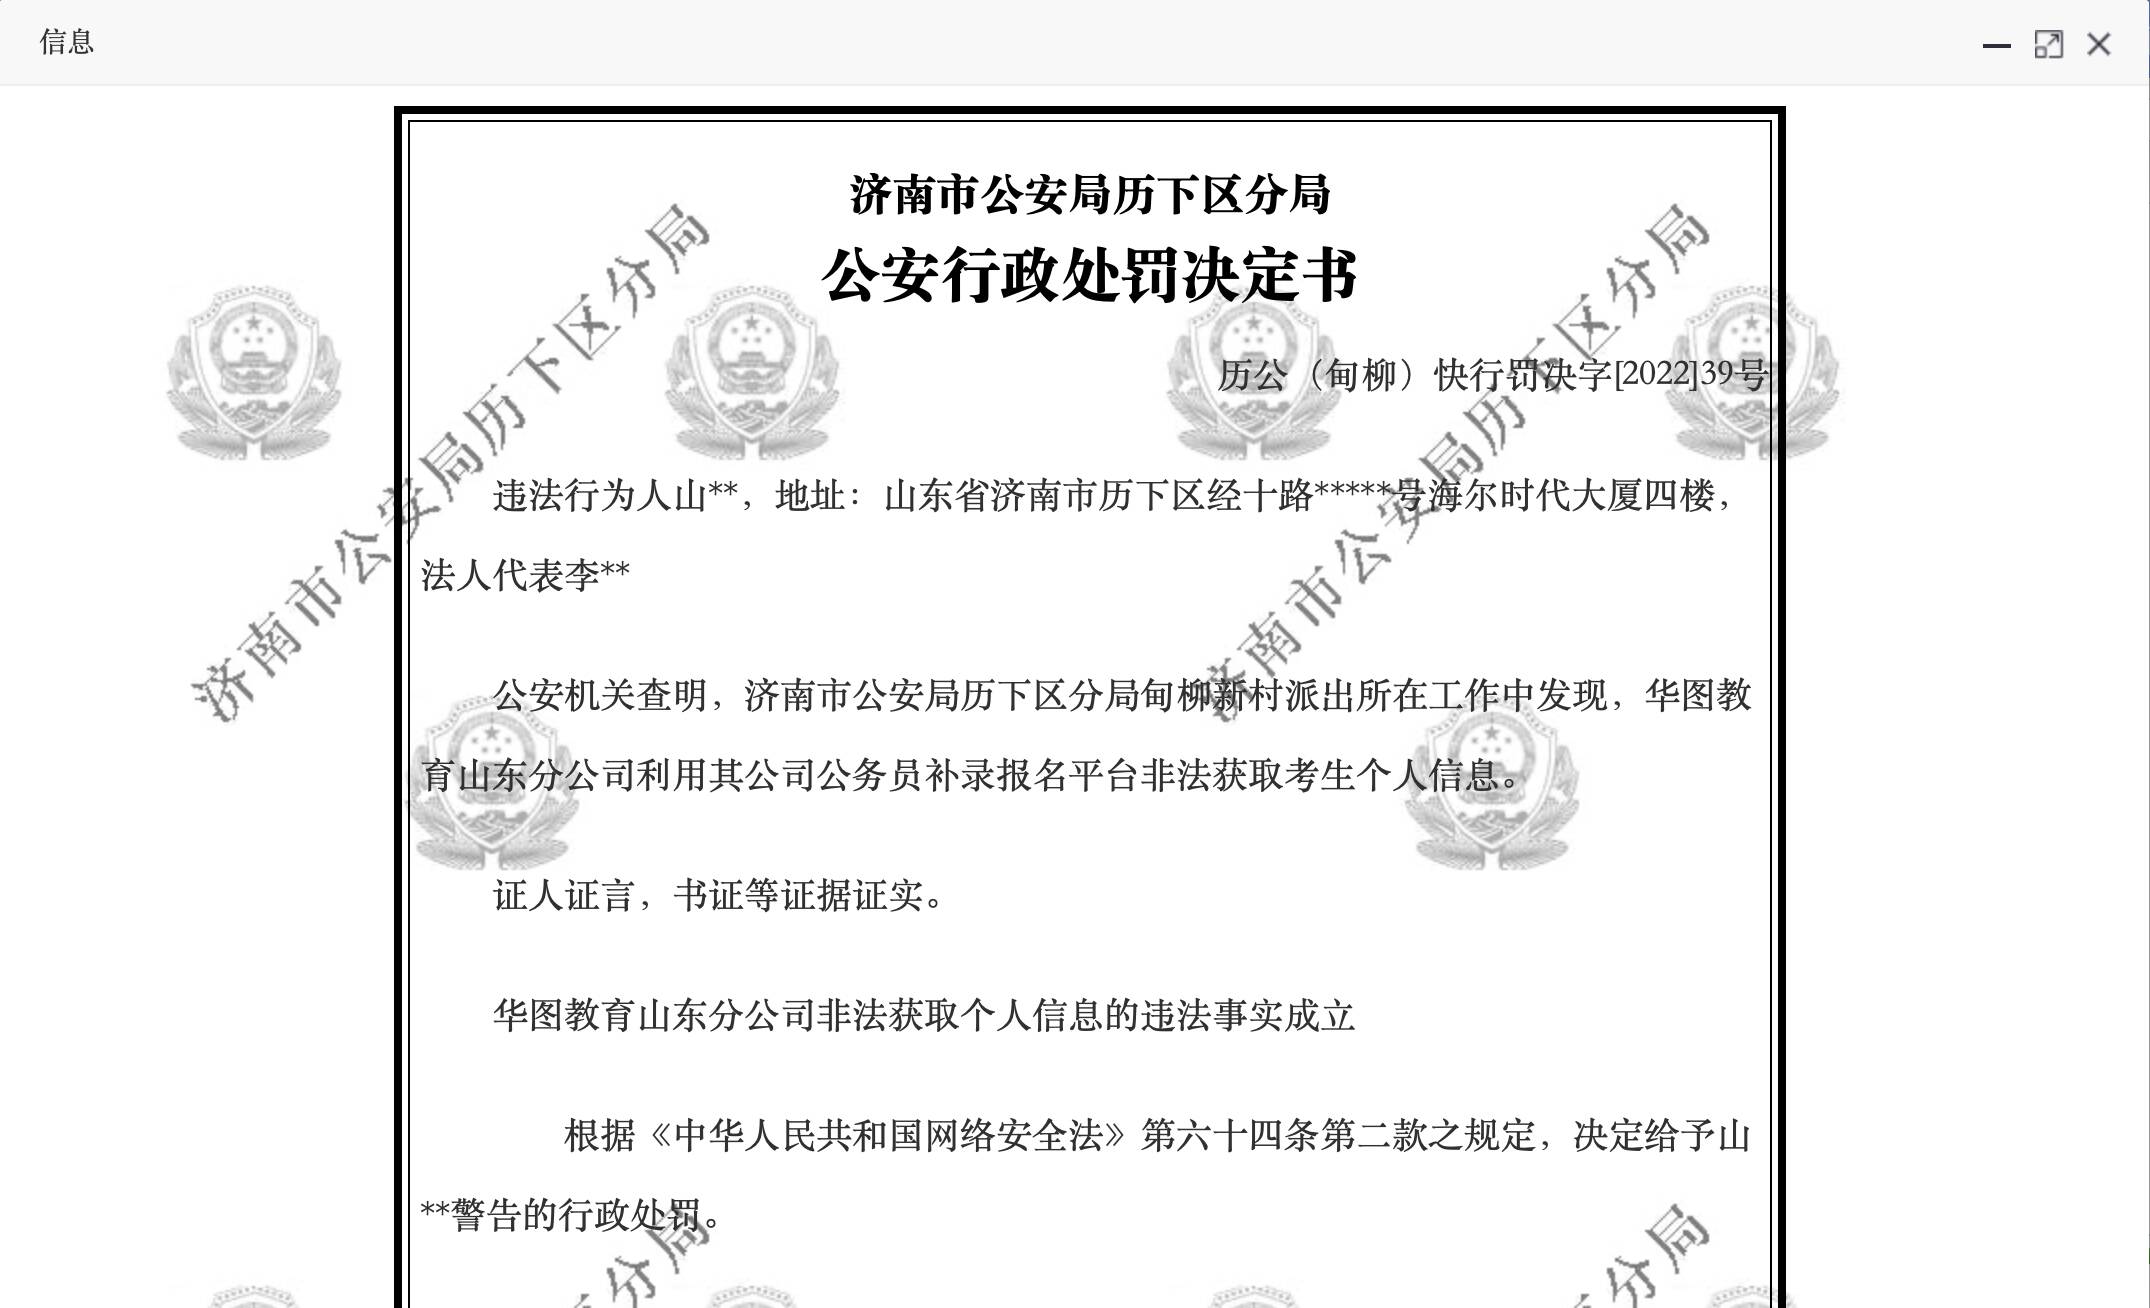 华图教育山东分公司非法获取个人信息被警告